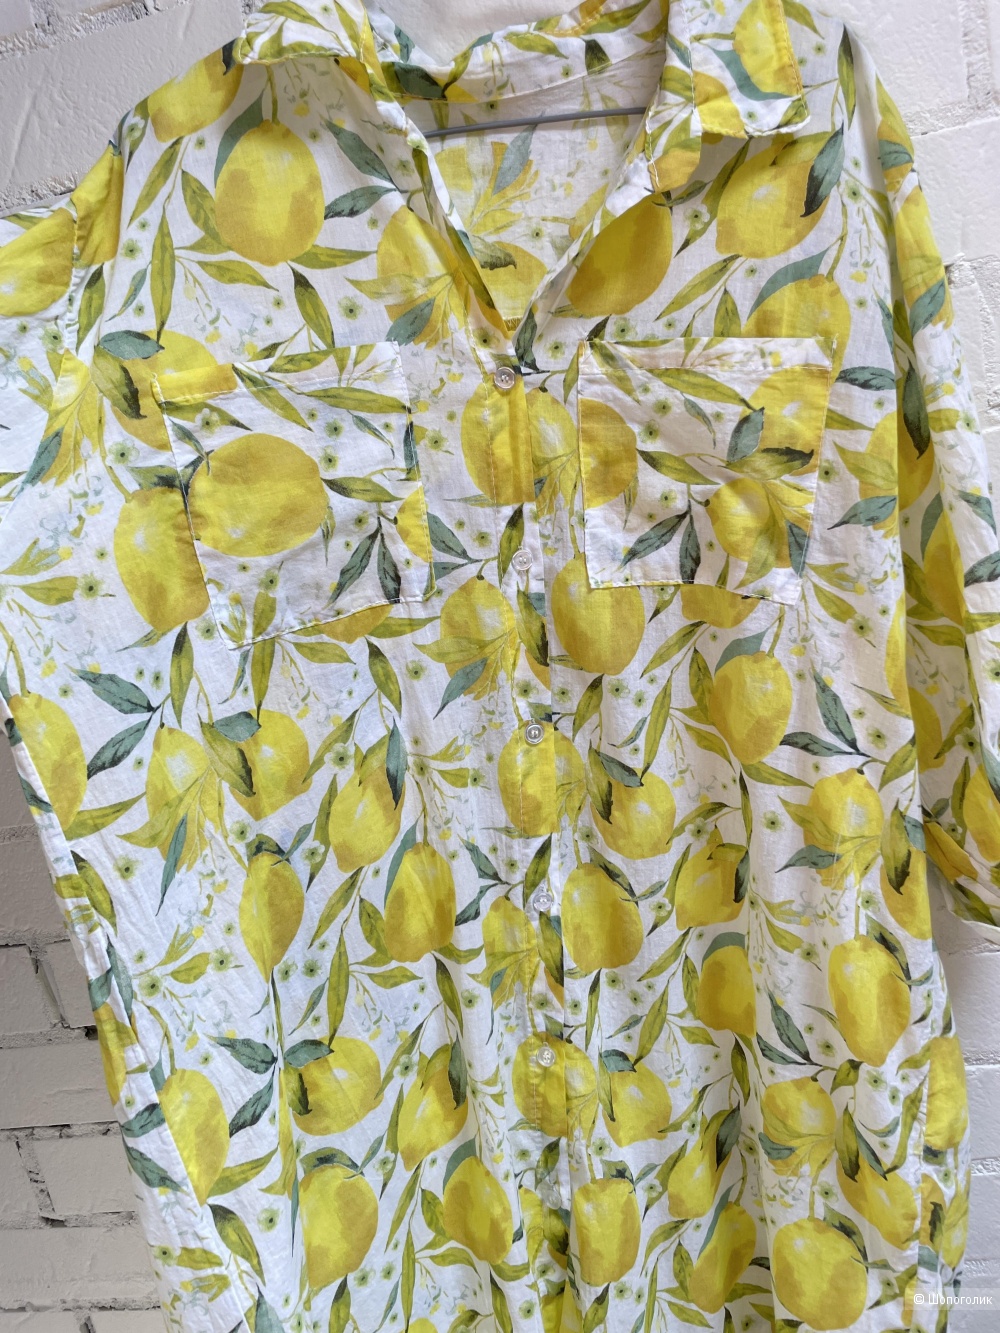 Платье рубашка Lemons italy, 42-52